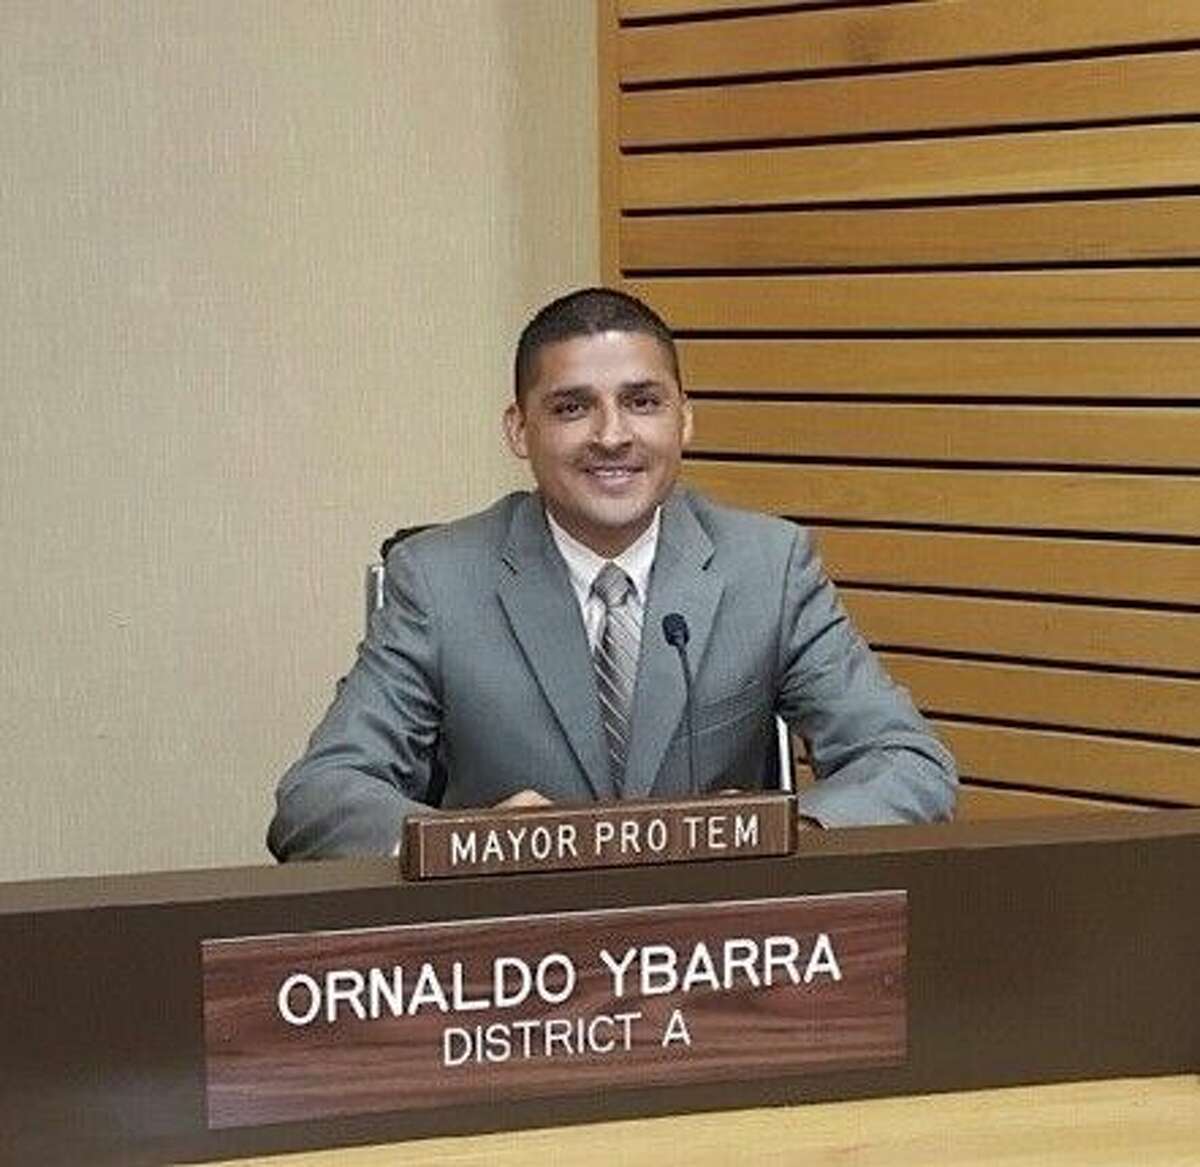 Ornaldo Ybarra was first elected to the Pasadena City Council in 2009.